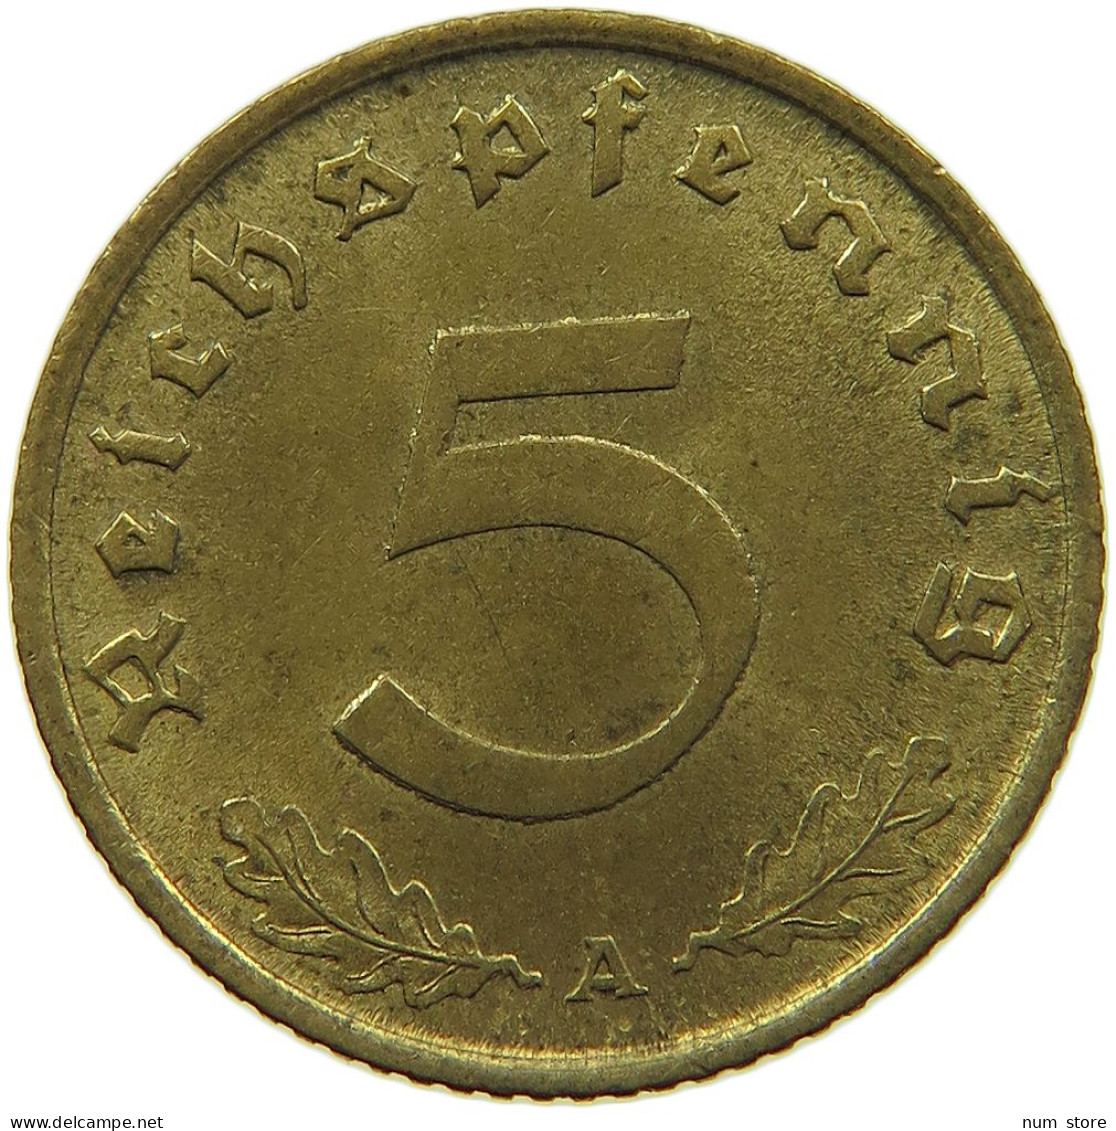 GERMANY 5 REICHSPFENNIG 1938 A #s091 0681 - 5 Reichspfennig